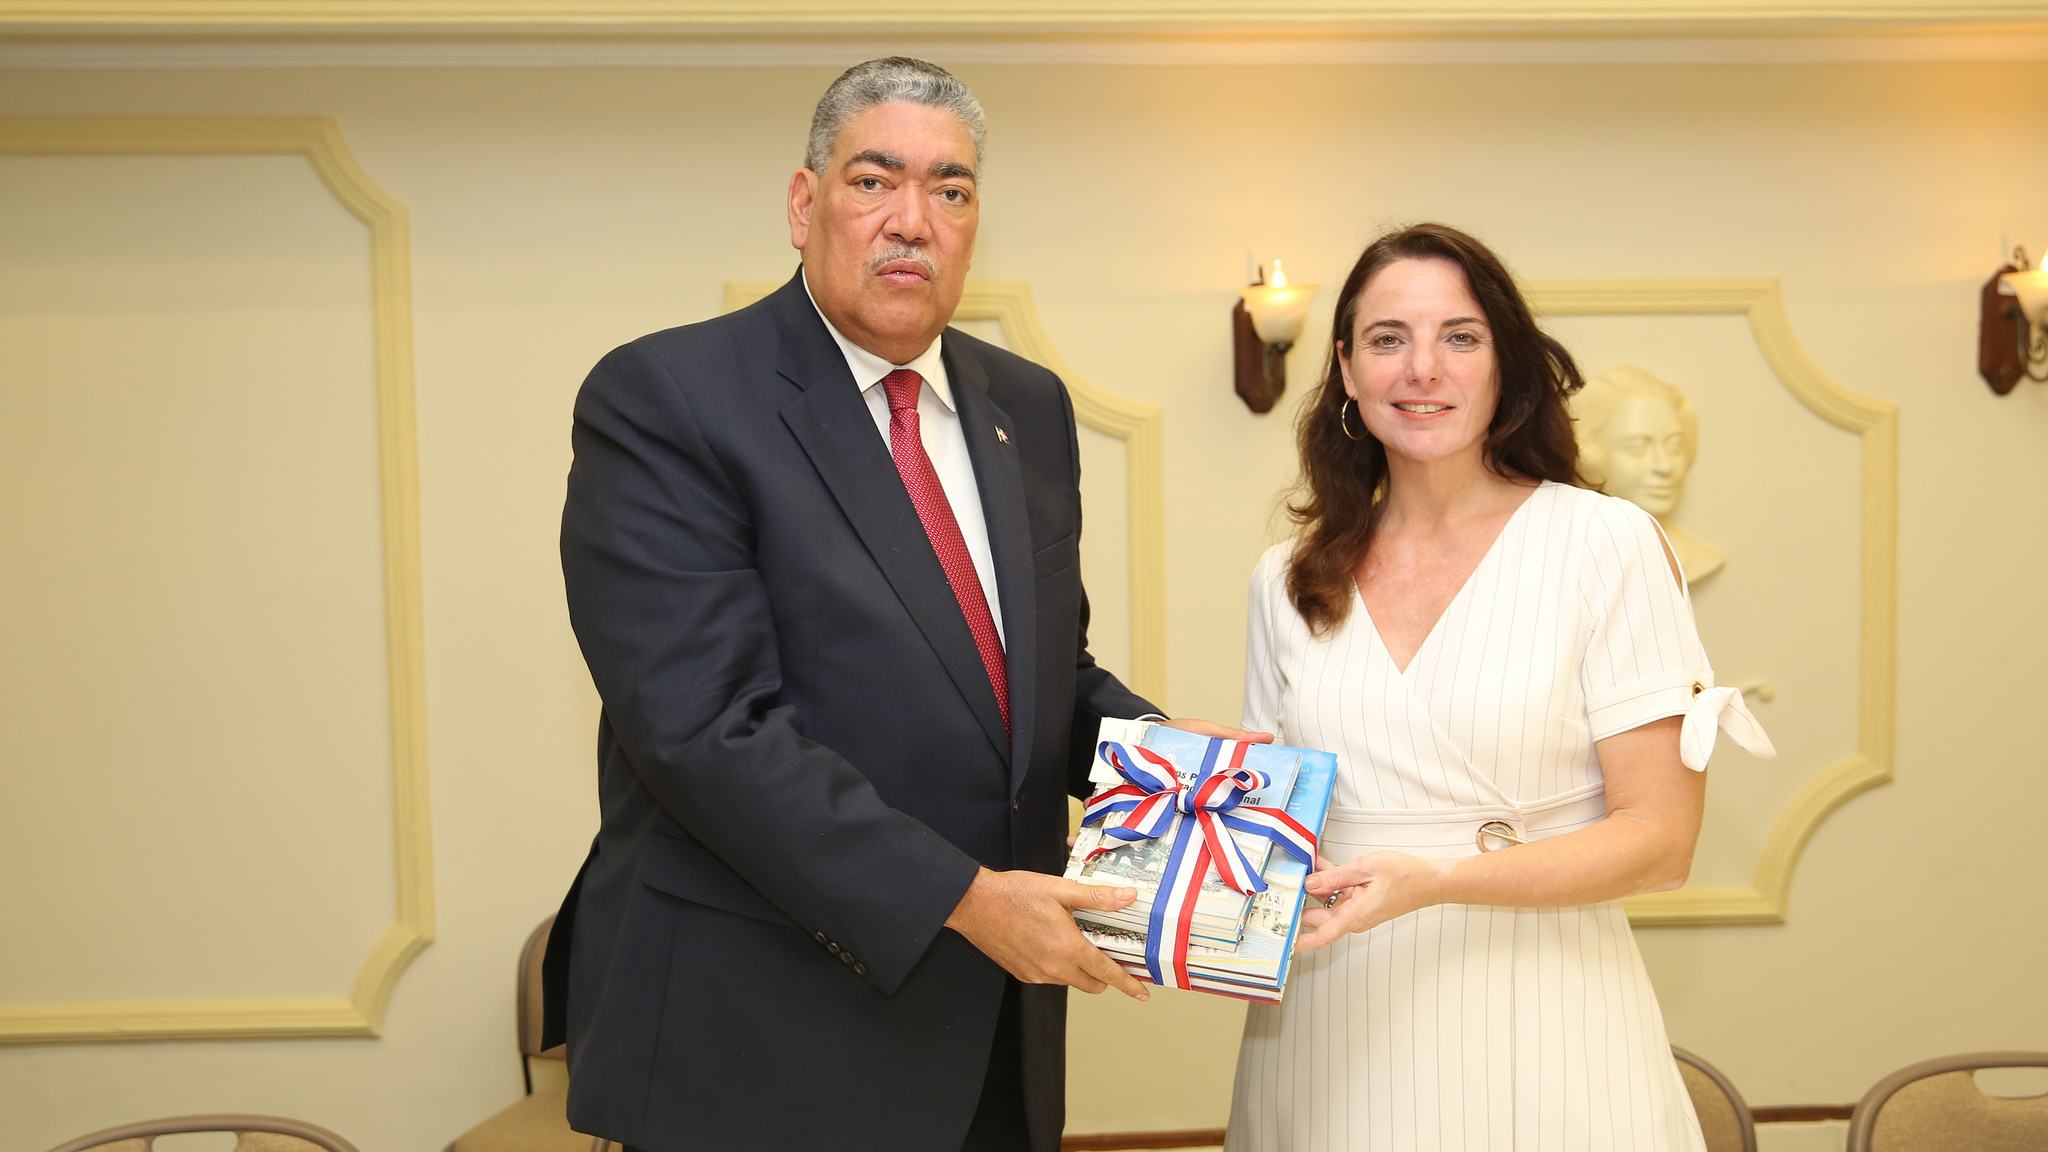 REPÚBLICA DOMINICANA: Ministro Políticas Integración Regional recibe visita cortesía nueva embajadora de Países Bajos